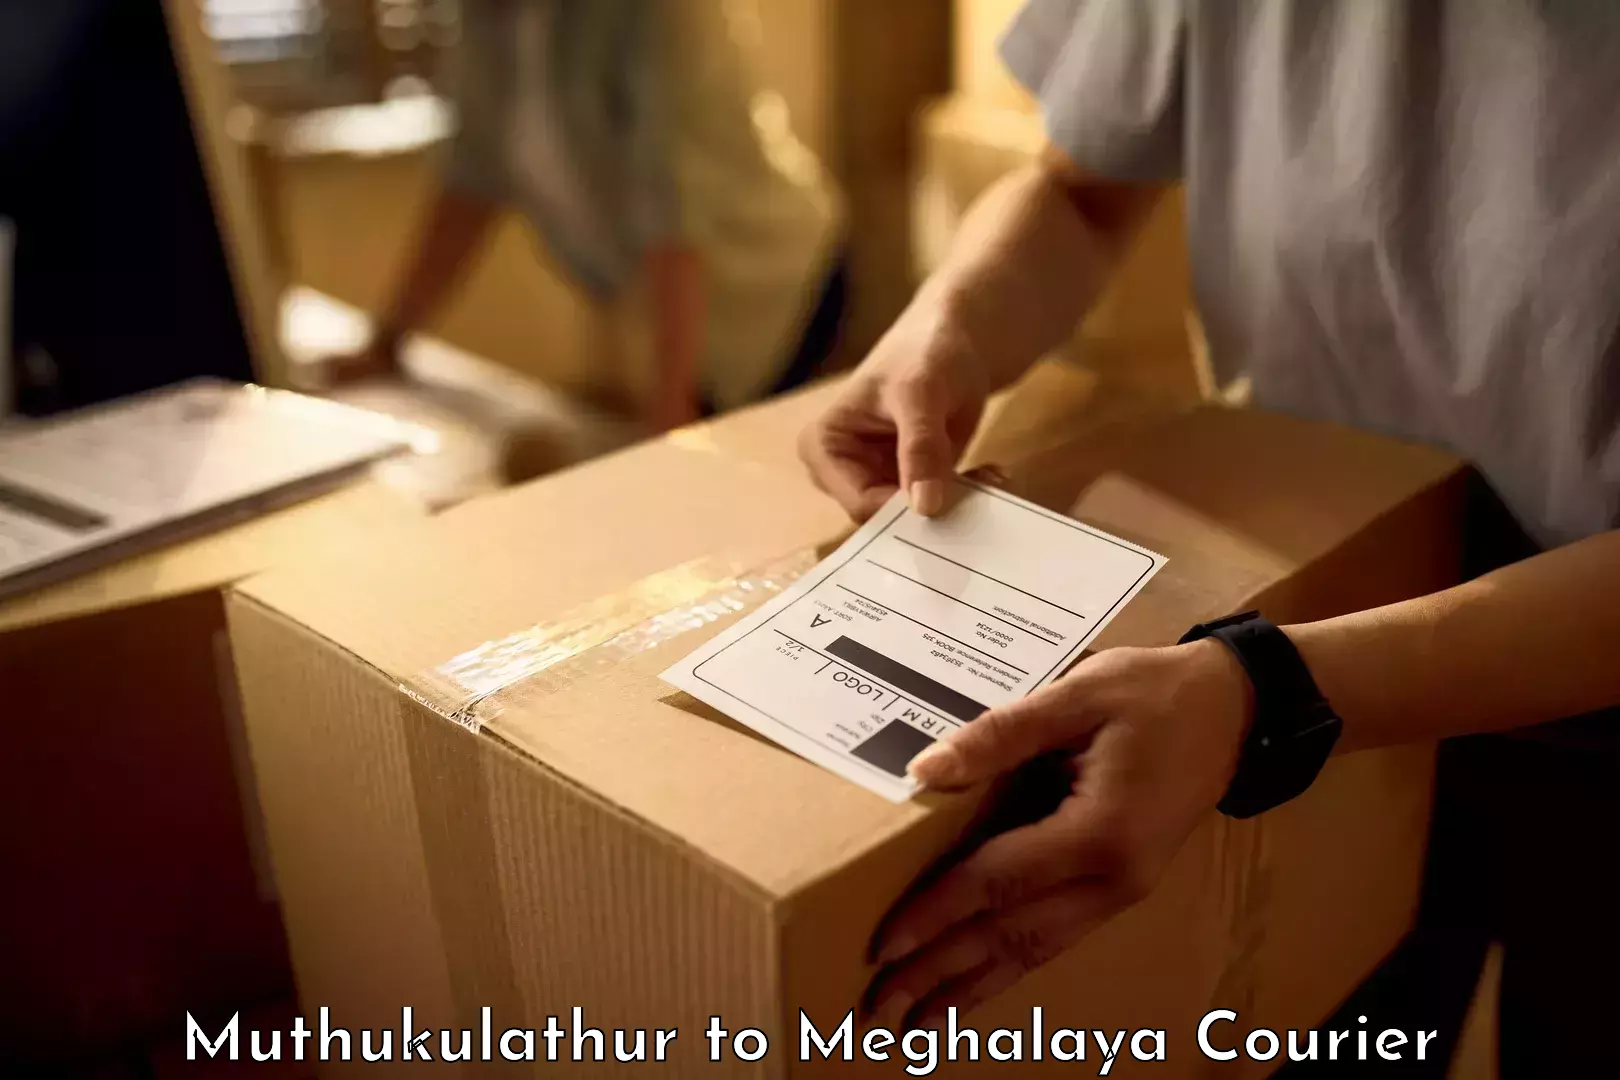 Baggage transport scheduler Muthukulathur to Meghalaya